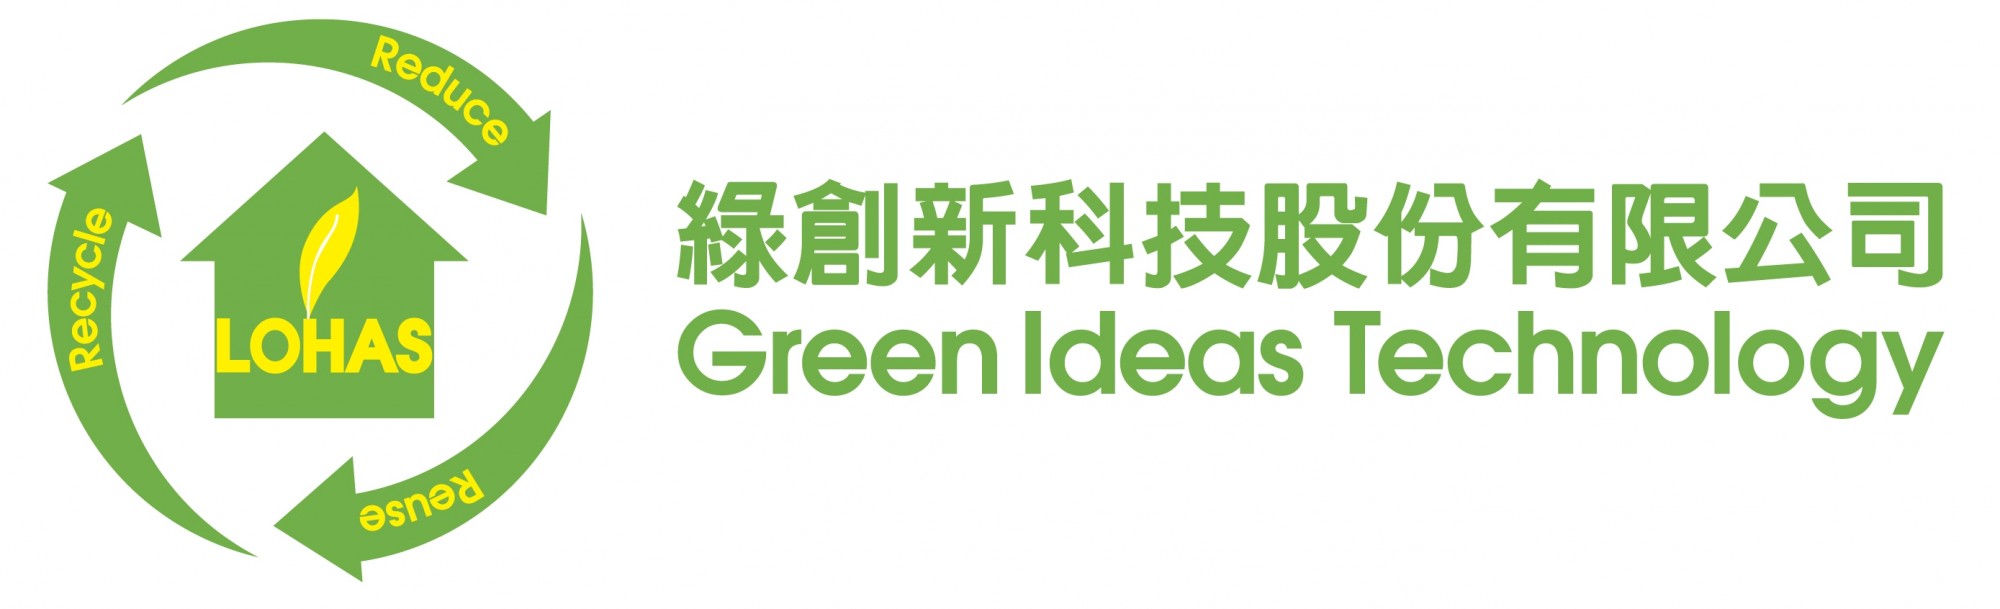 Green ideas Technology